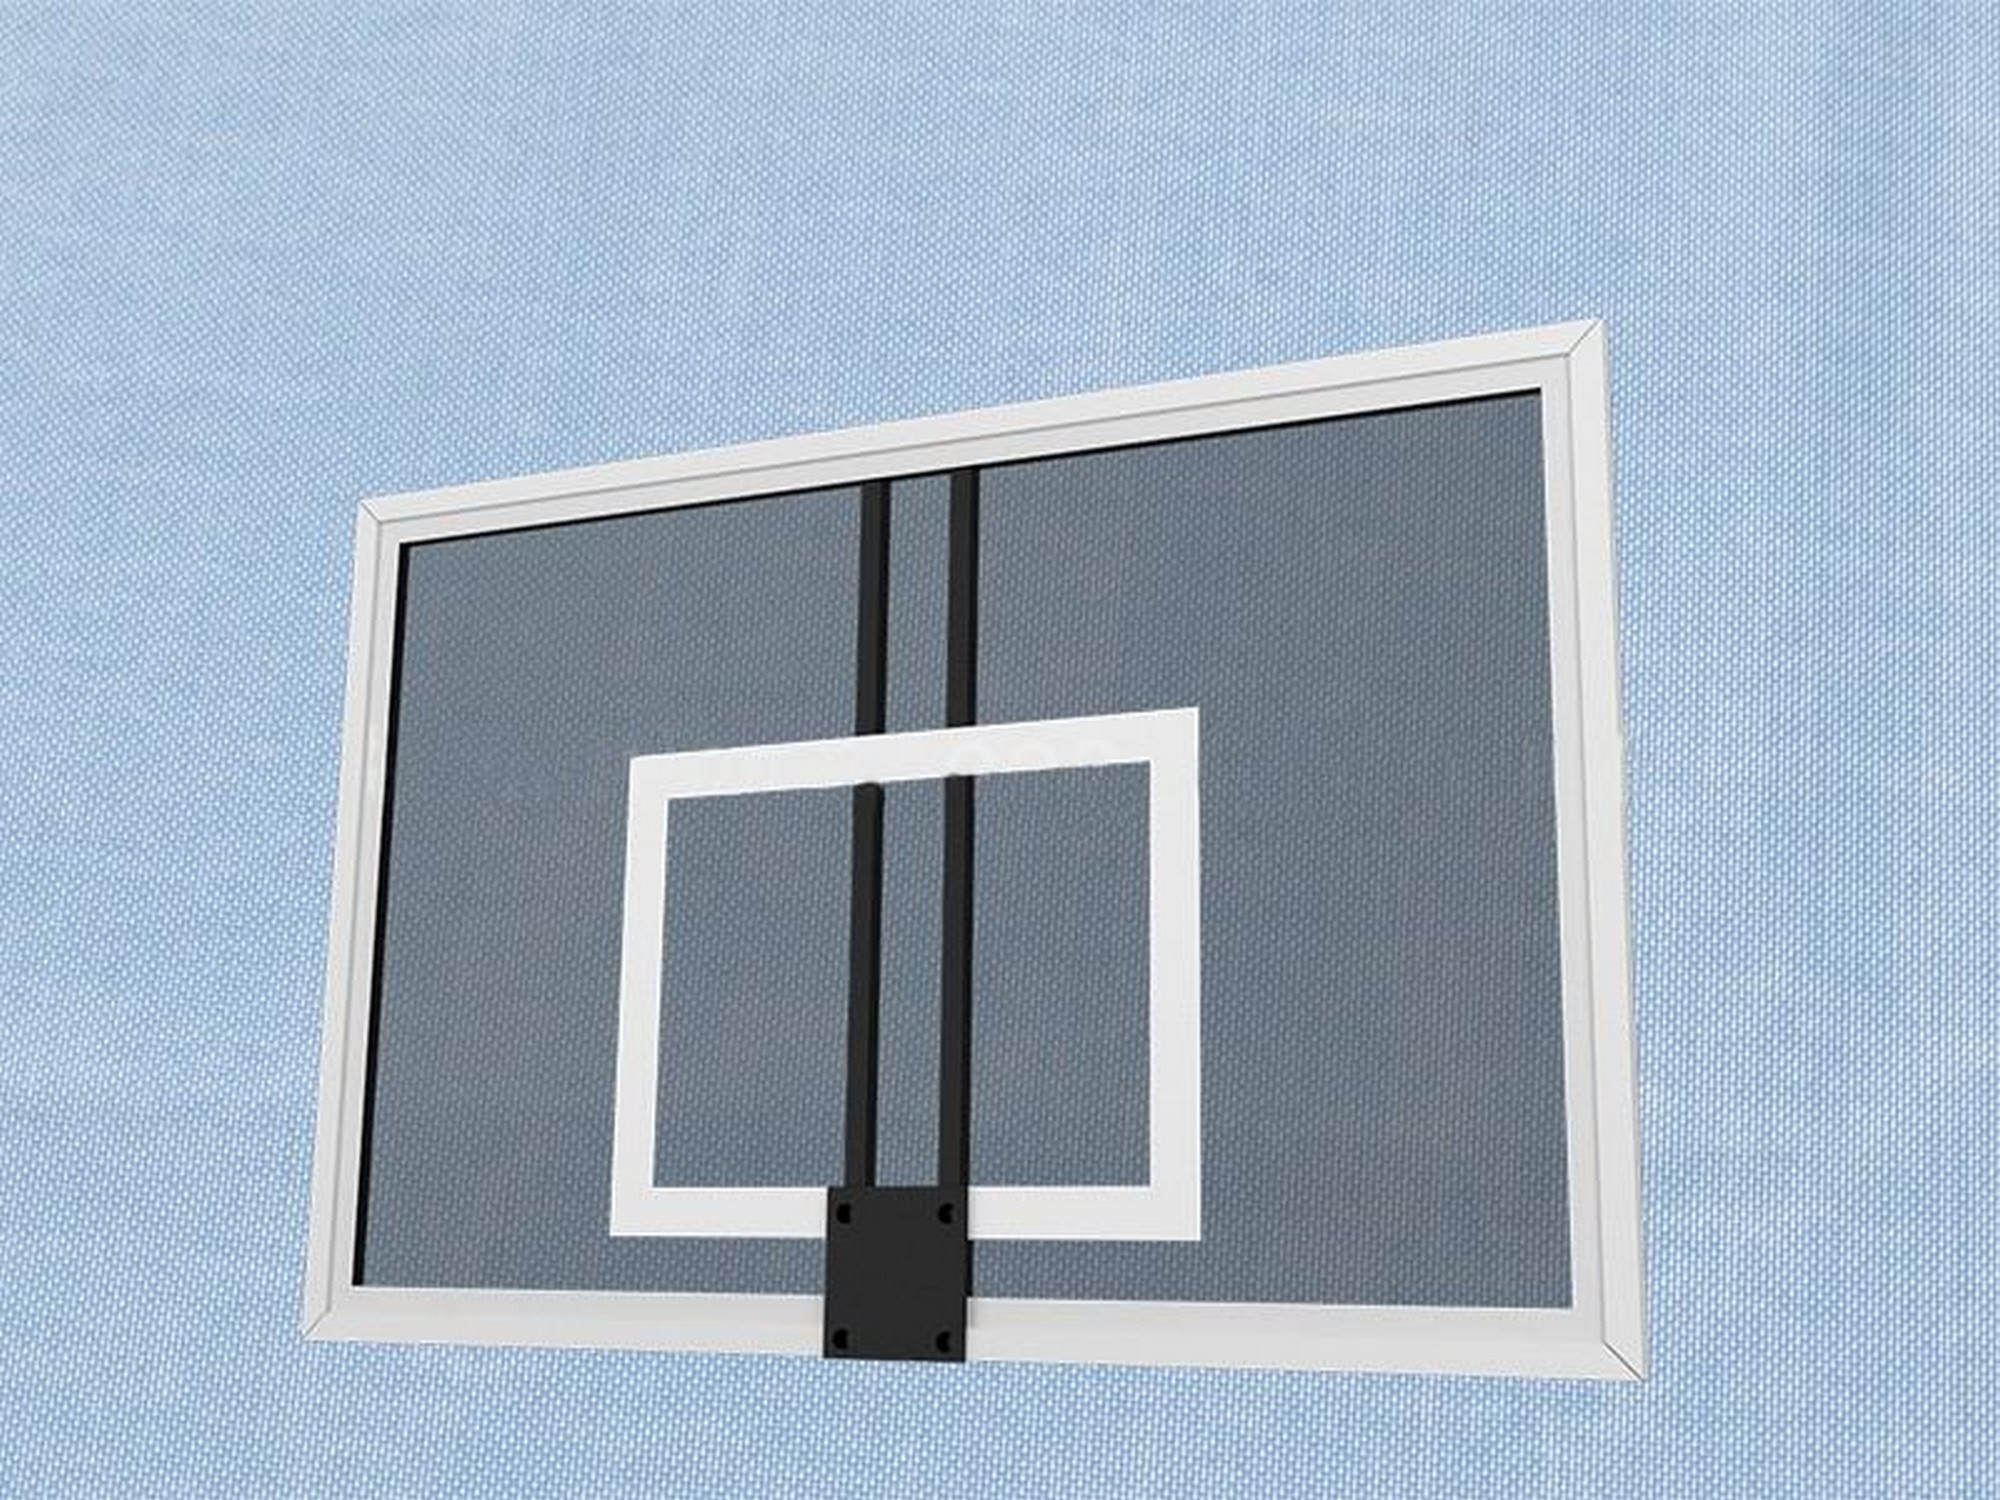 Щит баскетбольный тренировочный Гимнаст закаленное стекло 10 мм. AVIX, 1200х900 мм. на металлической раме 2.62 2000_1500